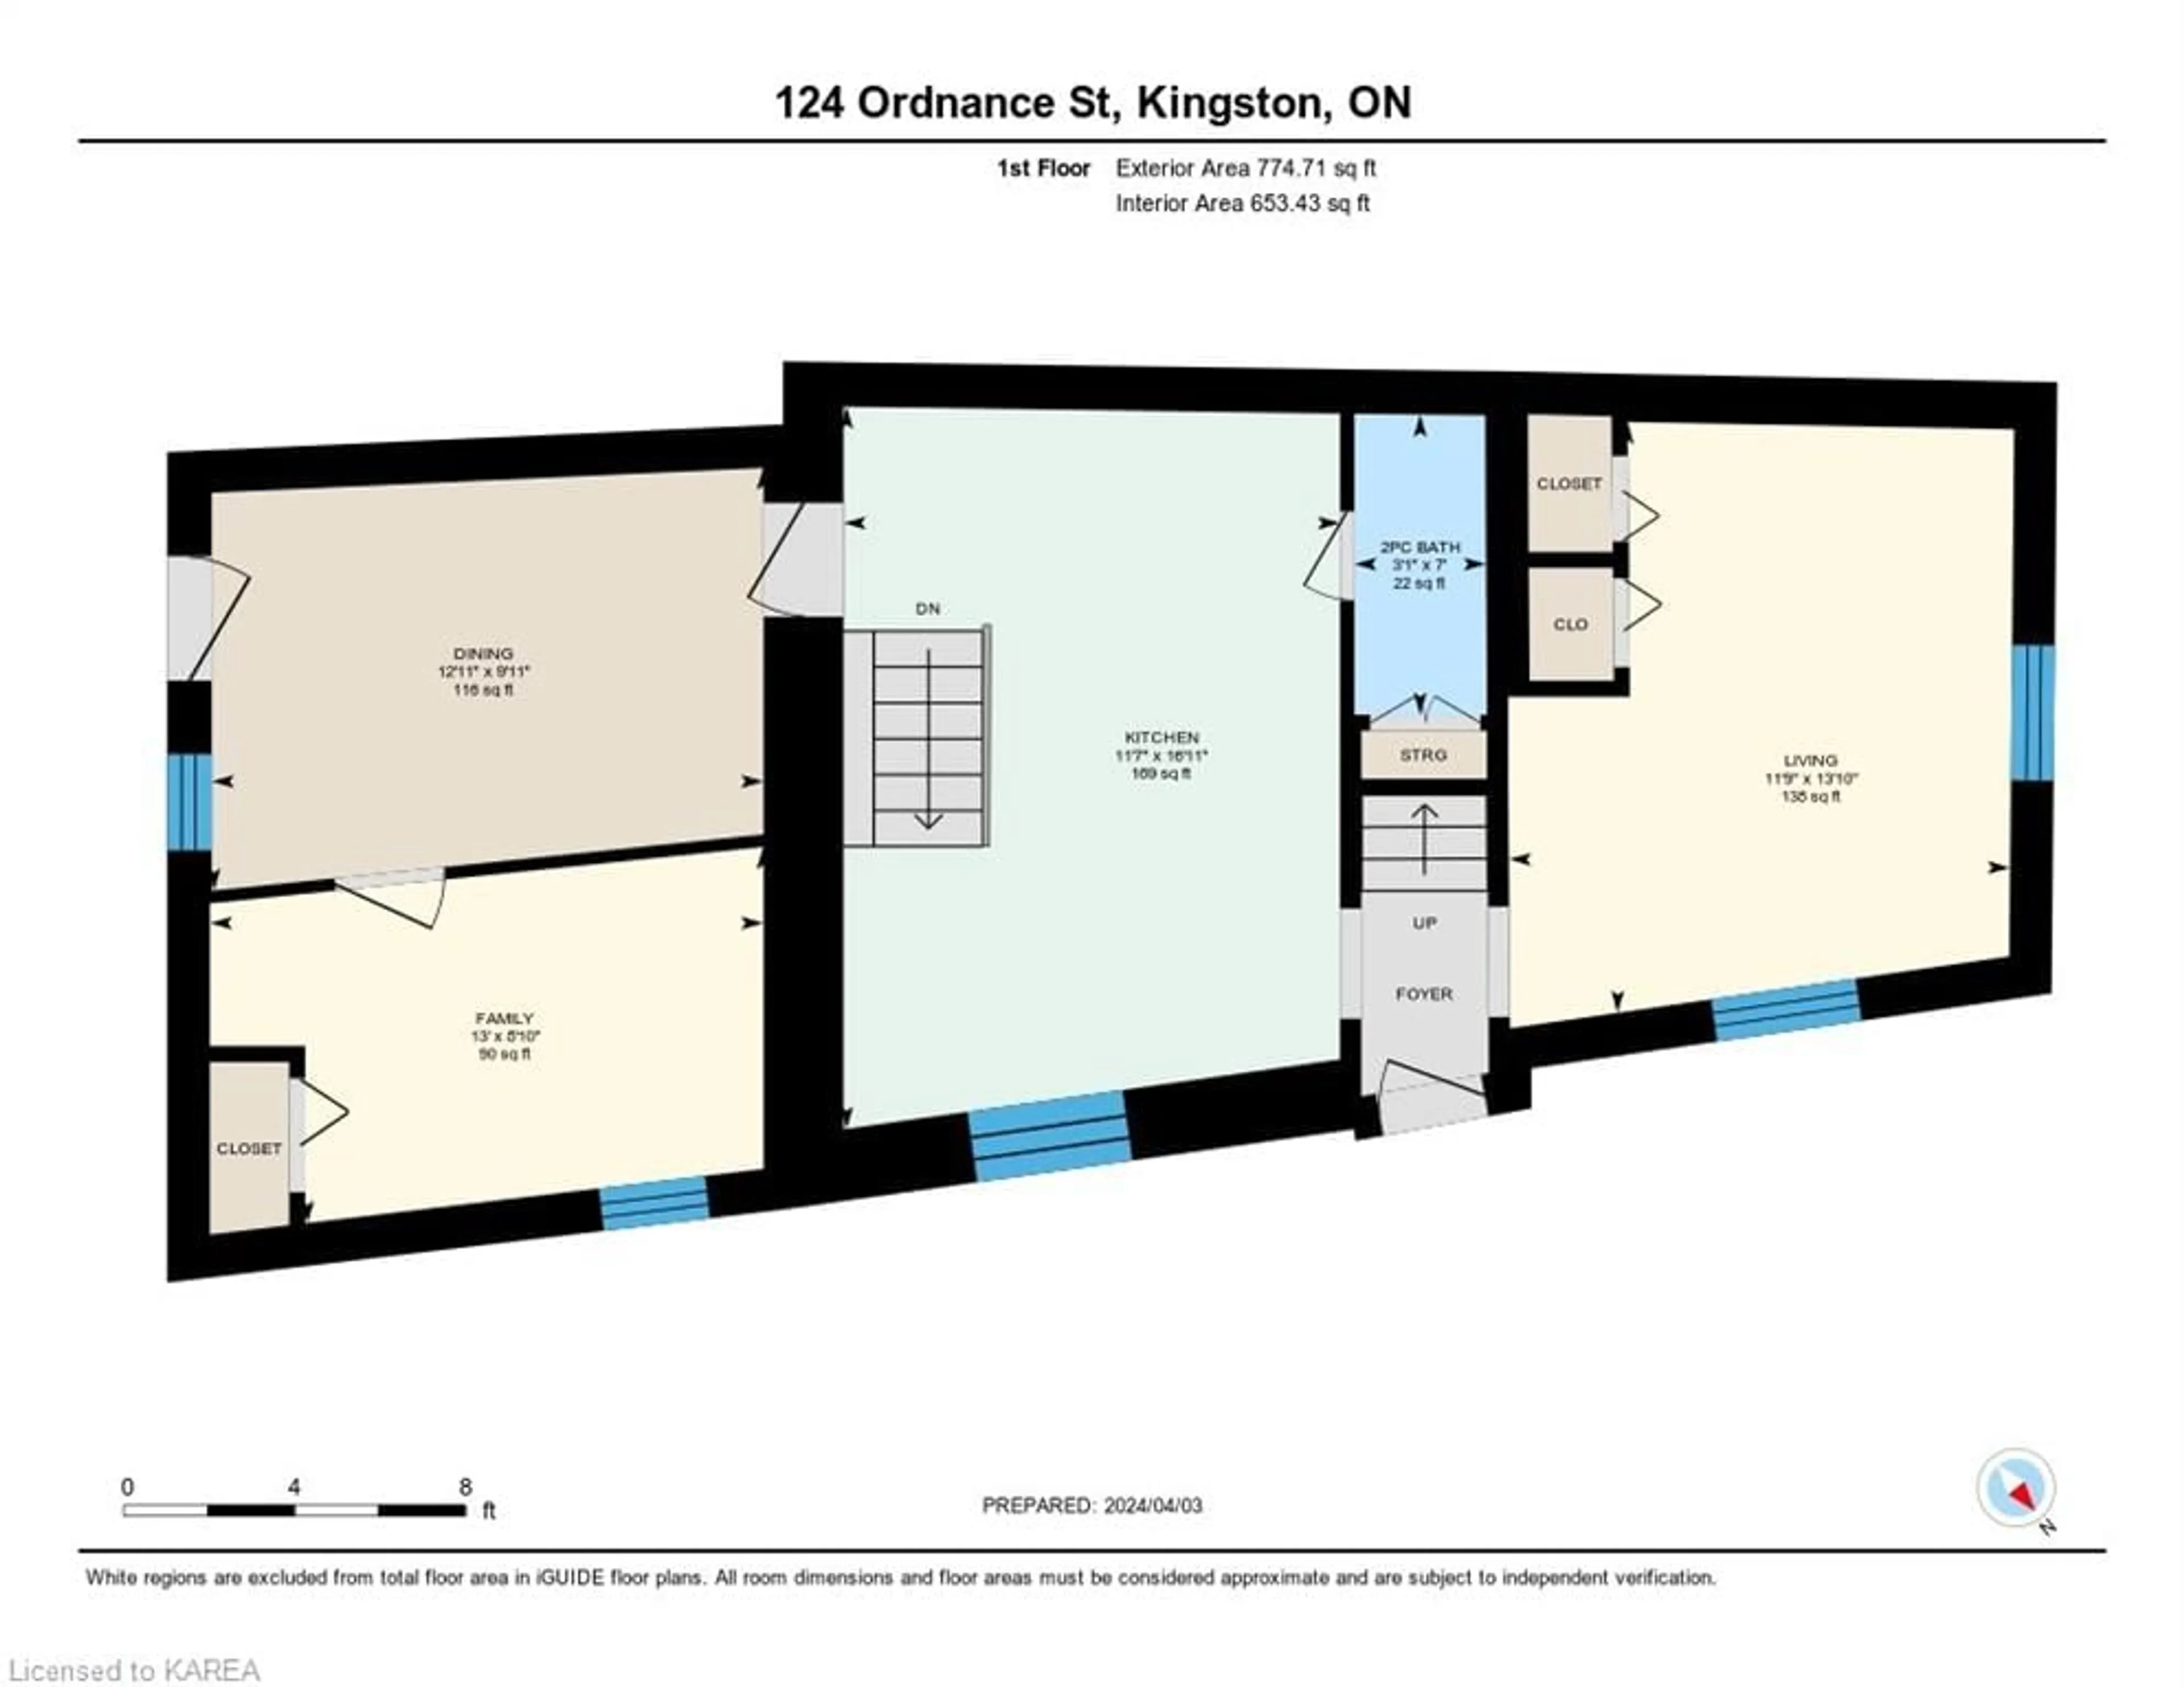 Floor plan for 124 Ordnance St, Kingston Ontario K7K 1G6